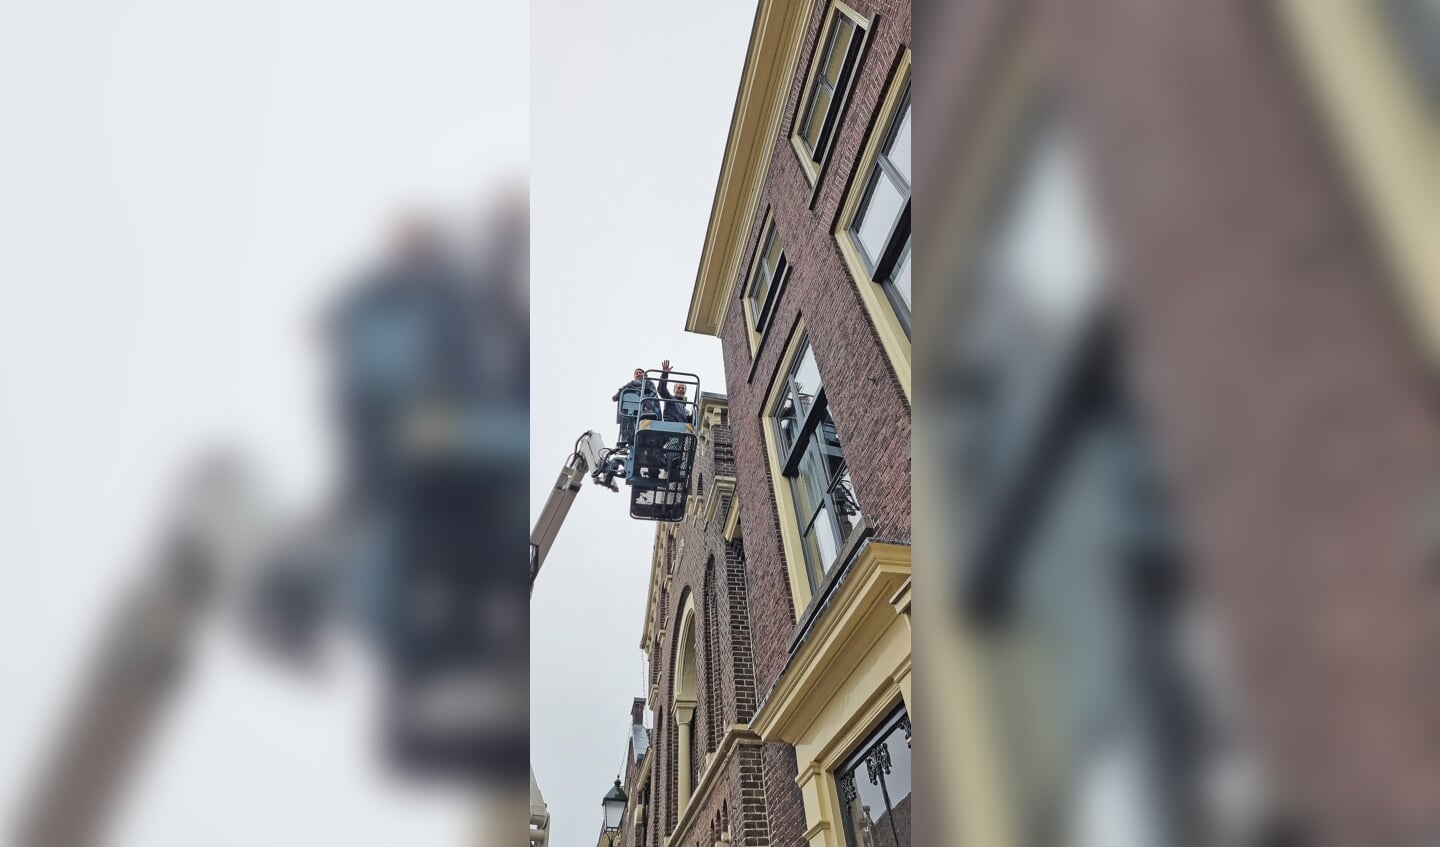 De hoogwerker moest eraan te pas komenom de verlichting aan de geveltjesin de Leeuweringerstraat te hangen.